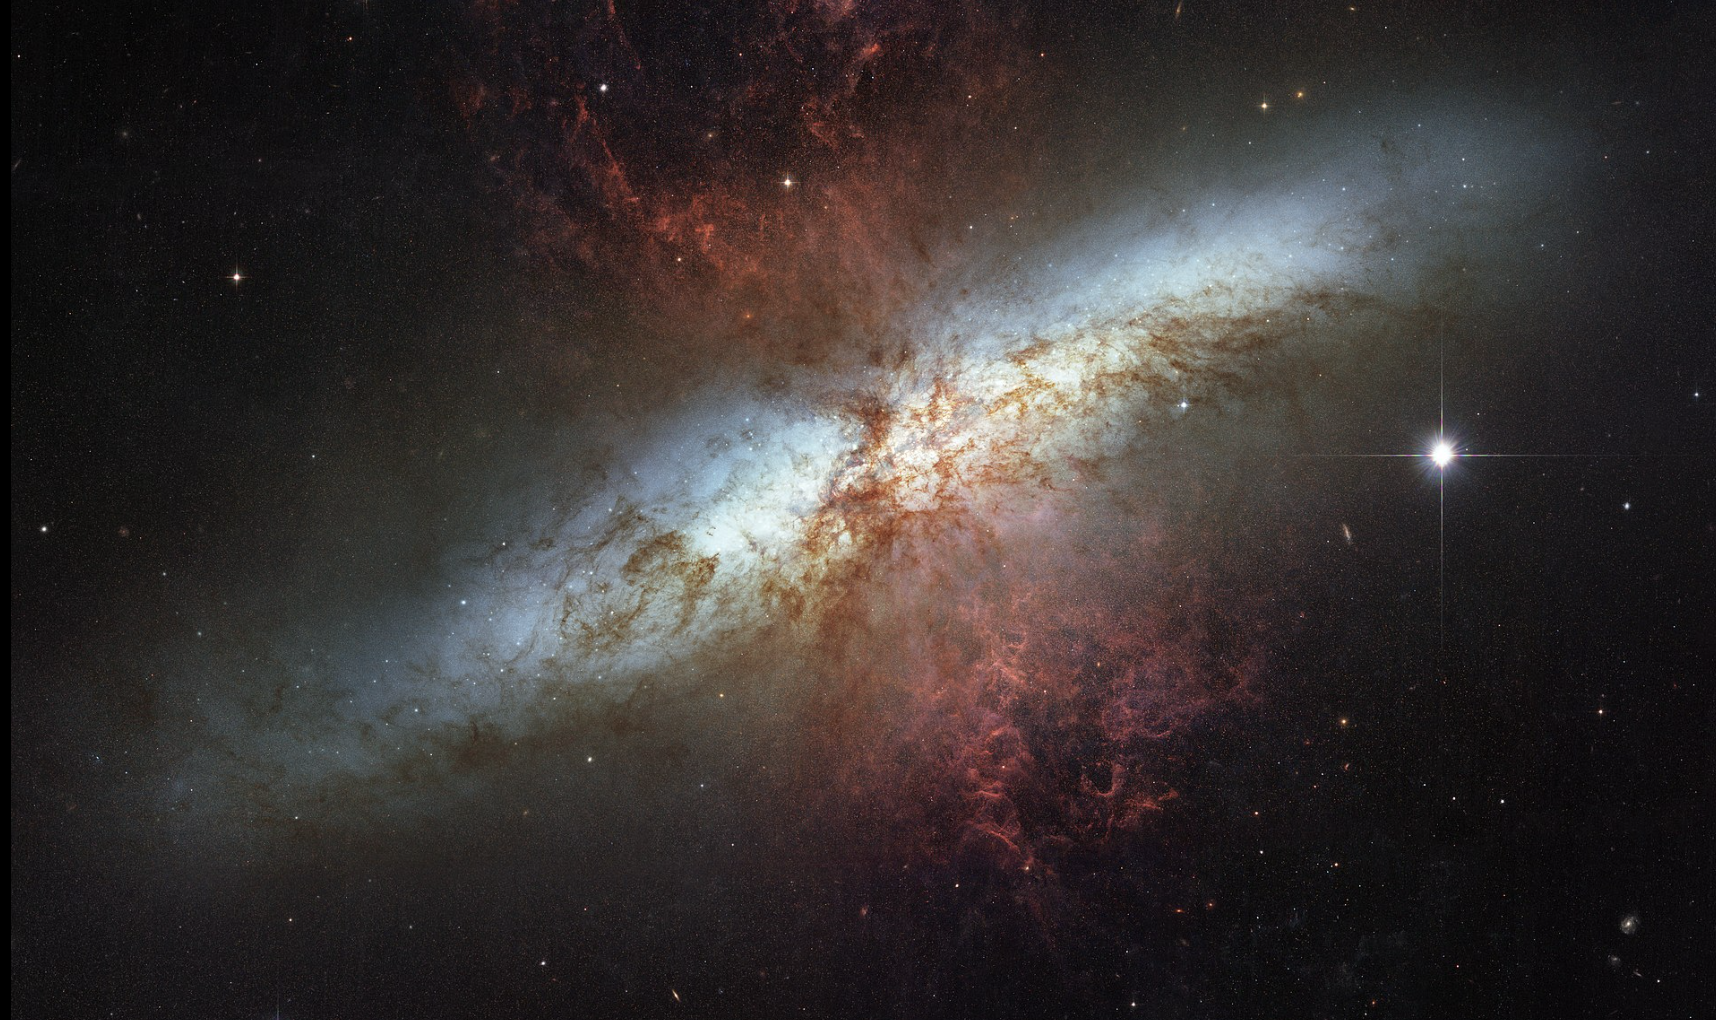 starburst galaxy, Messier 82 (M82)